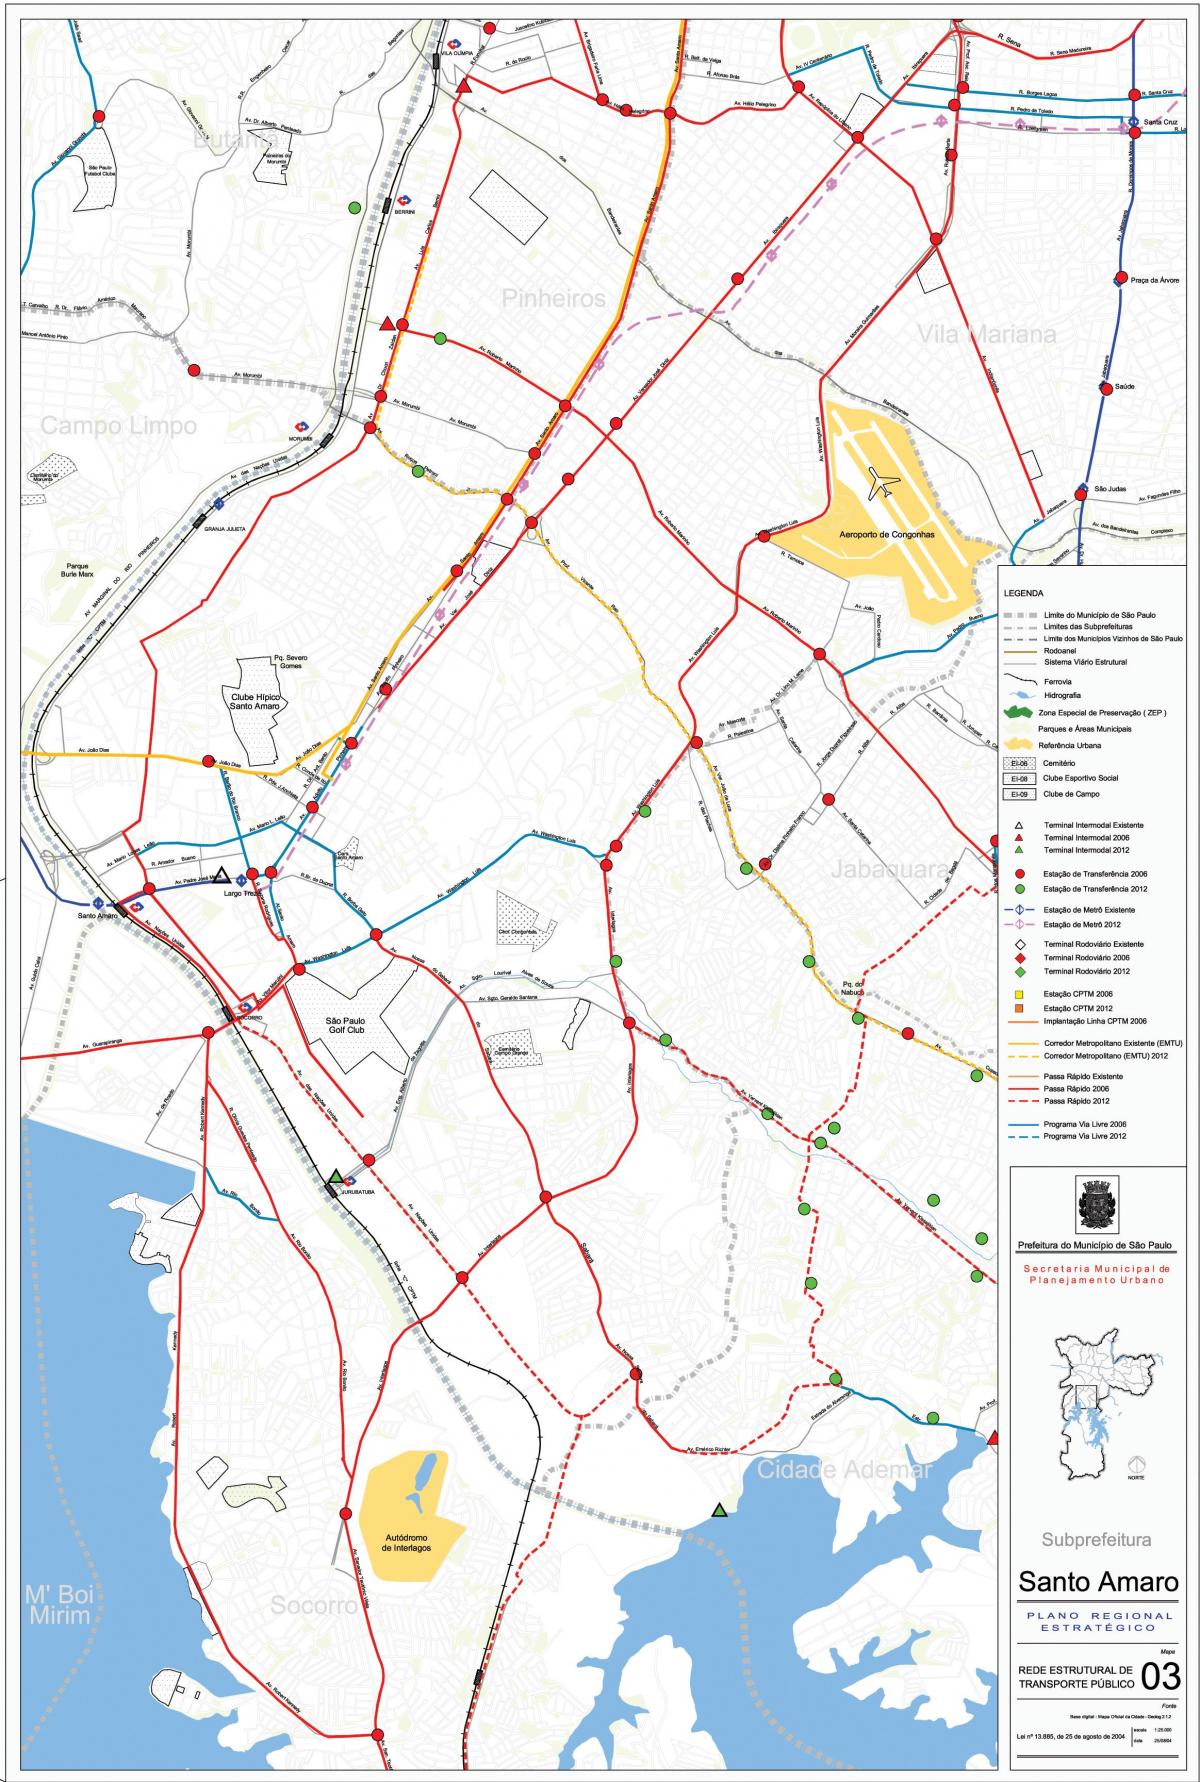 Mapa ng Santo Amaro São Paulo - Pampublikong transports